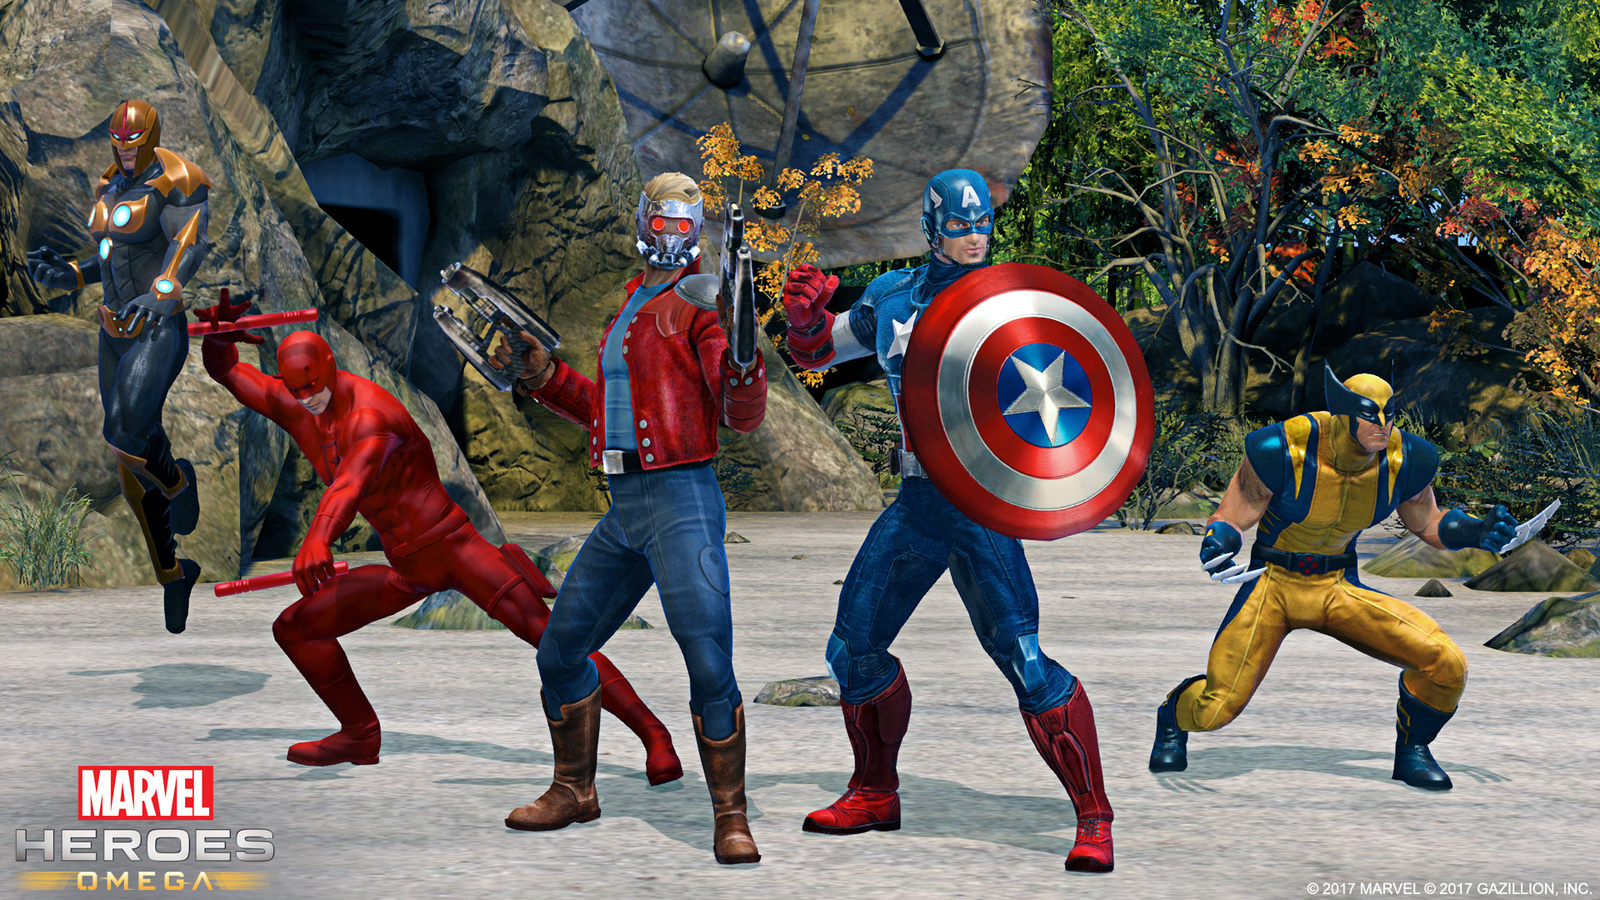 Marvel: Avengers Alliance 2 - Metacritic